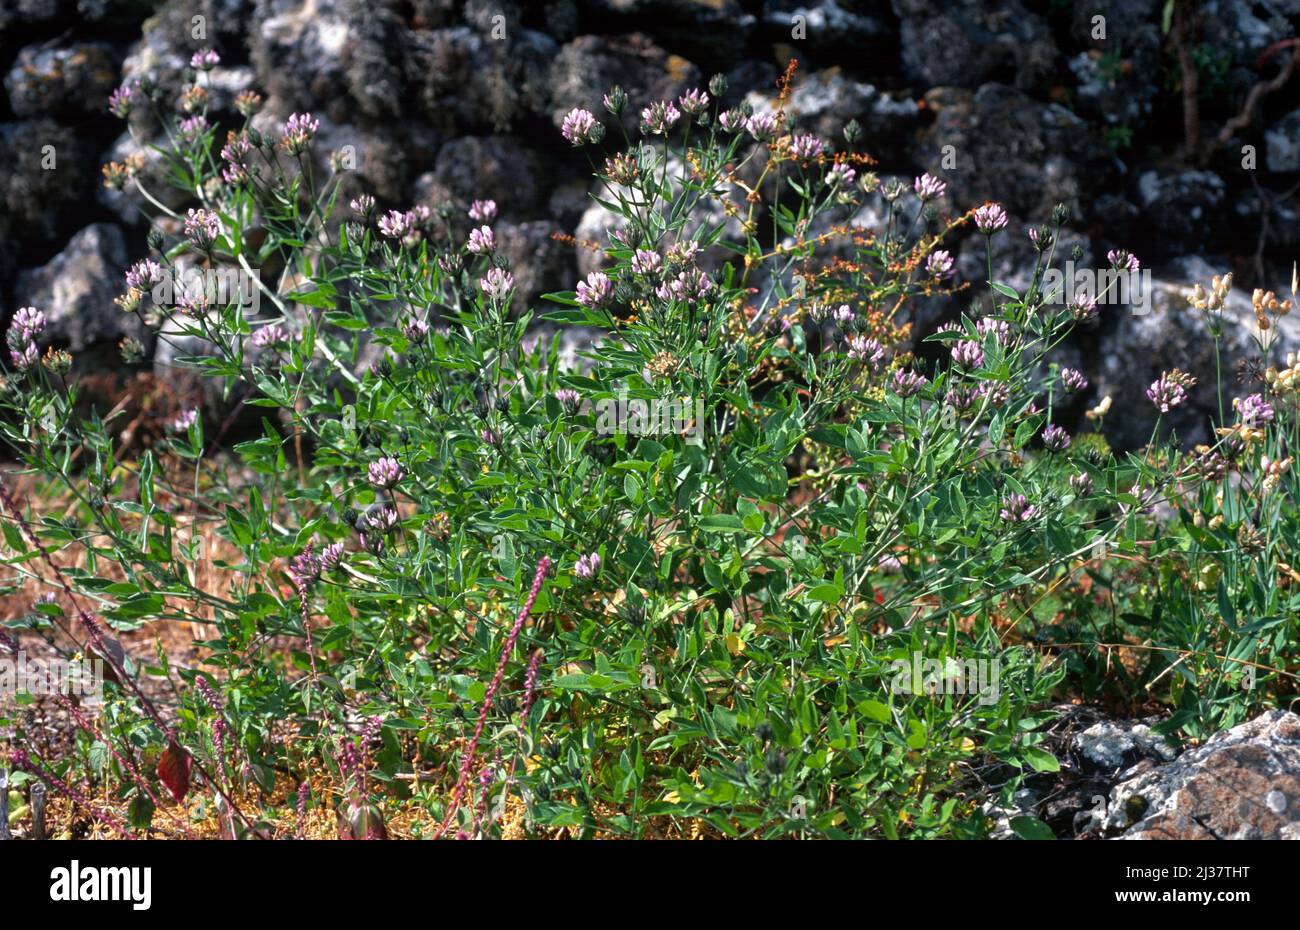 Il pisello arabo (Bituminaria bituminosa o Psoralea bituminosa) è un'erba perenne originaria del bacino mediterraneo e delle isole Canarie. Foto Stock